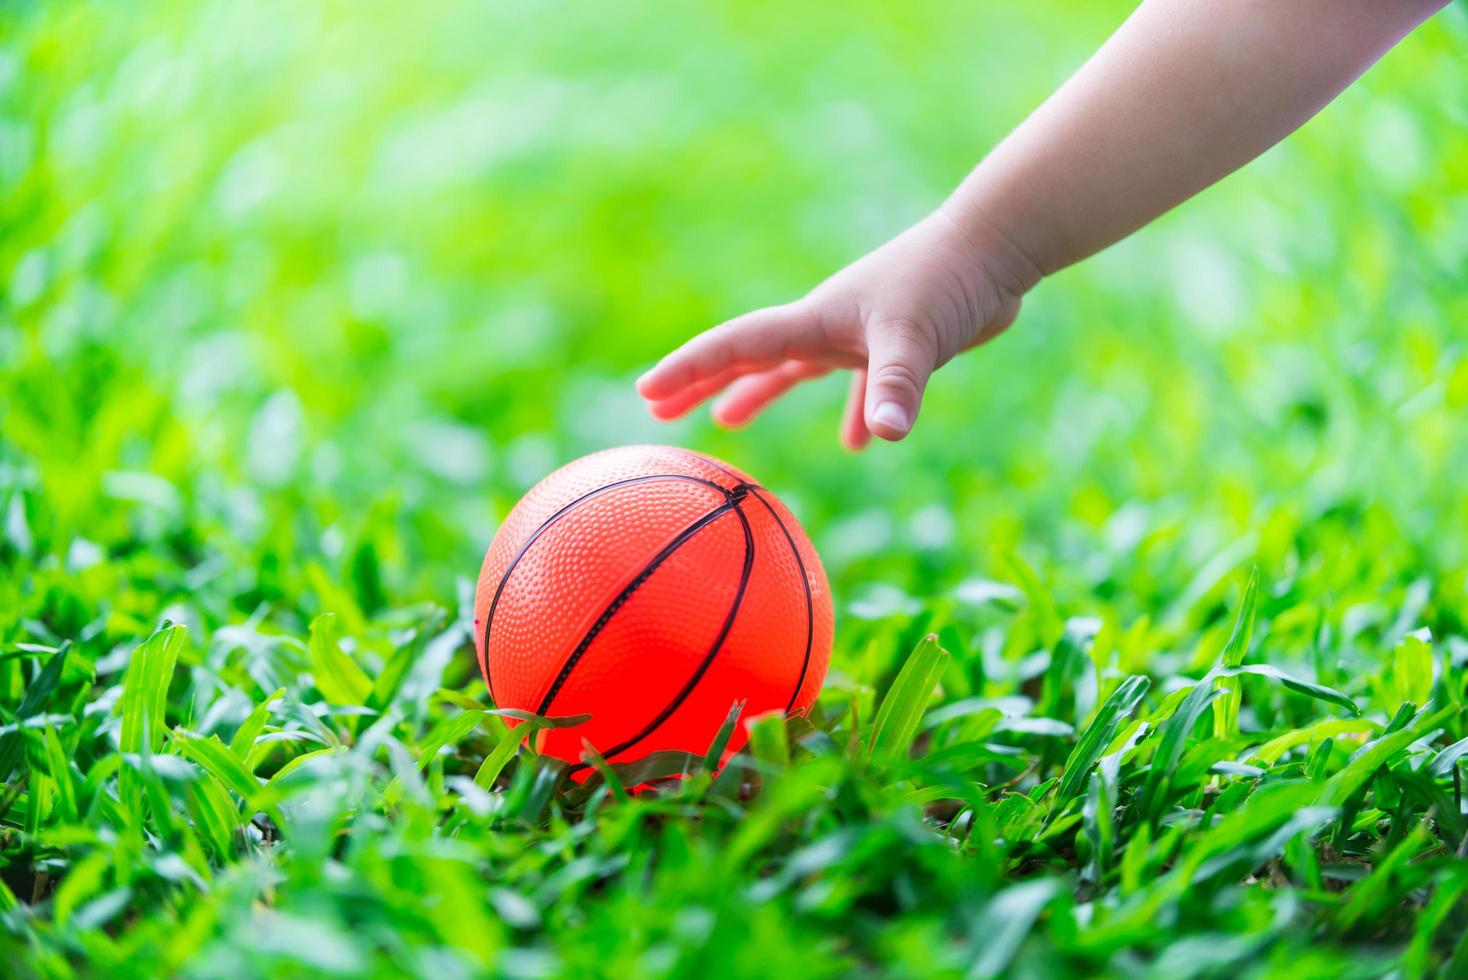 petite fille à la main atteint la balle orange placée sur une pelouse verte rafraîchissante. elle ramasse des balles en caoutchouc. concepts sensoriels et apprentissage. photo